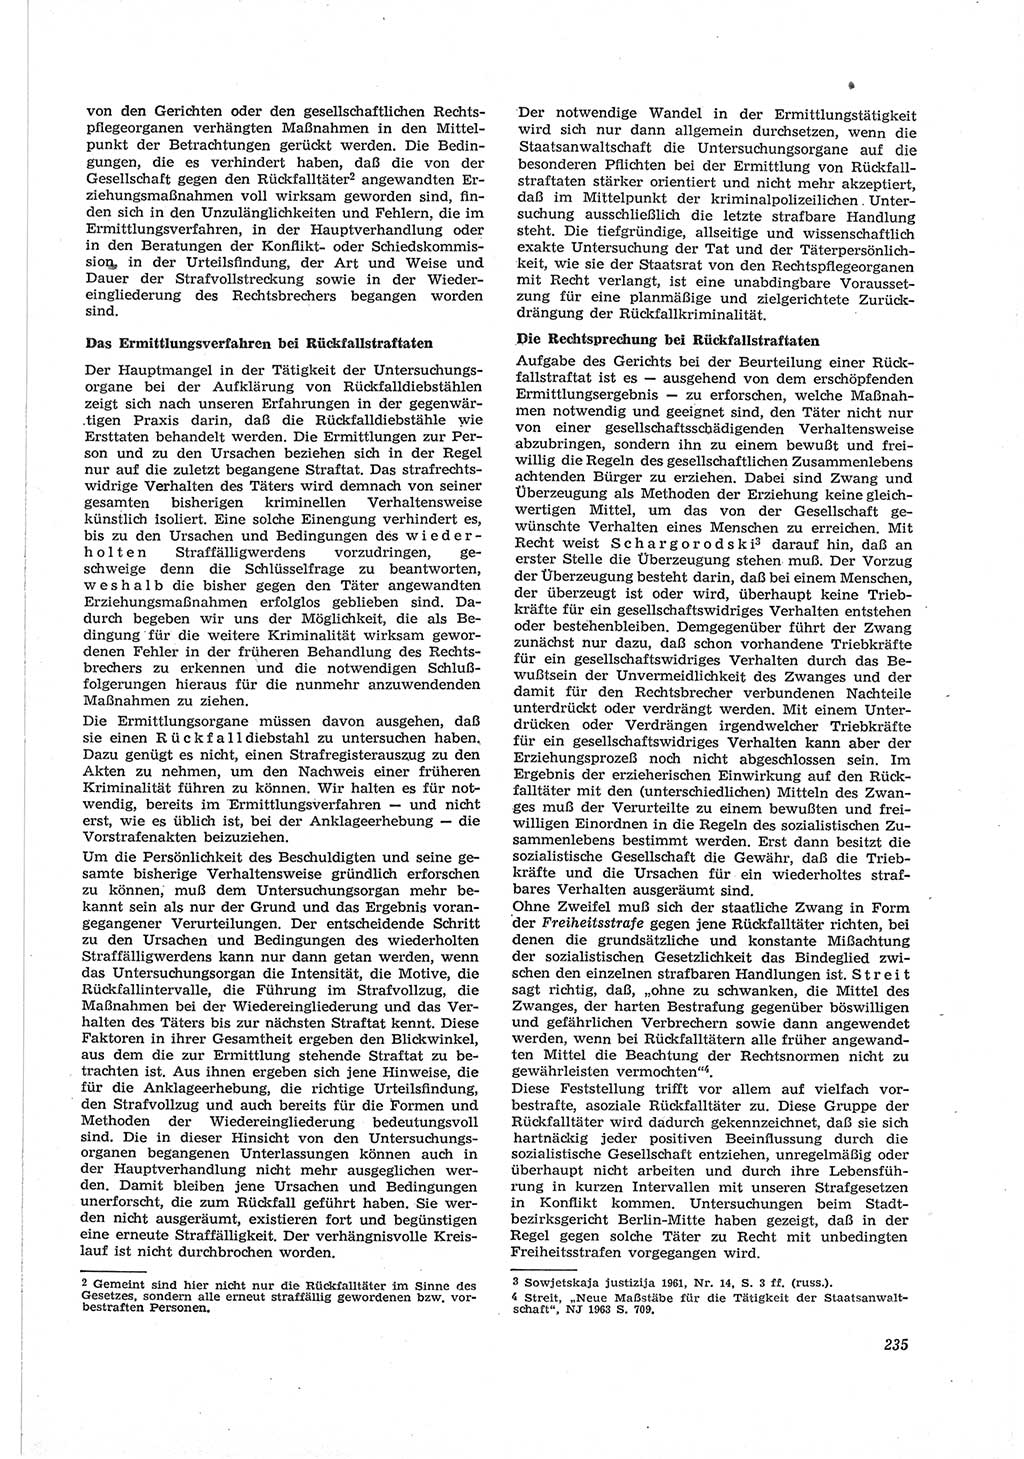 Neue Justiz (NJ), Zeitschrift für Recht und Rechtswissenschaft [Deutsche Demokratische Republik (DDR)], 18. Jahrgang 1964, Seite 235 (NJ DDR 1964, S. 235)